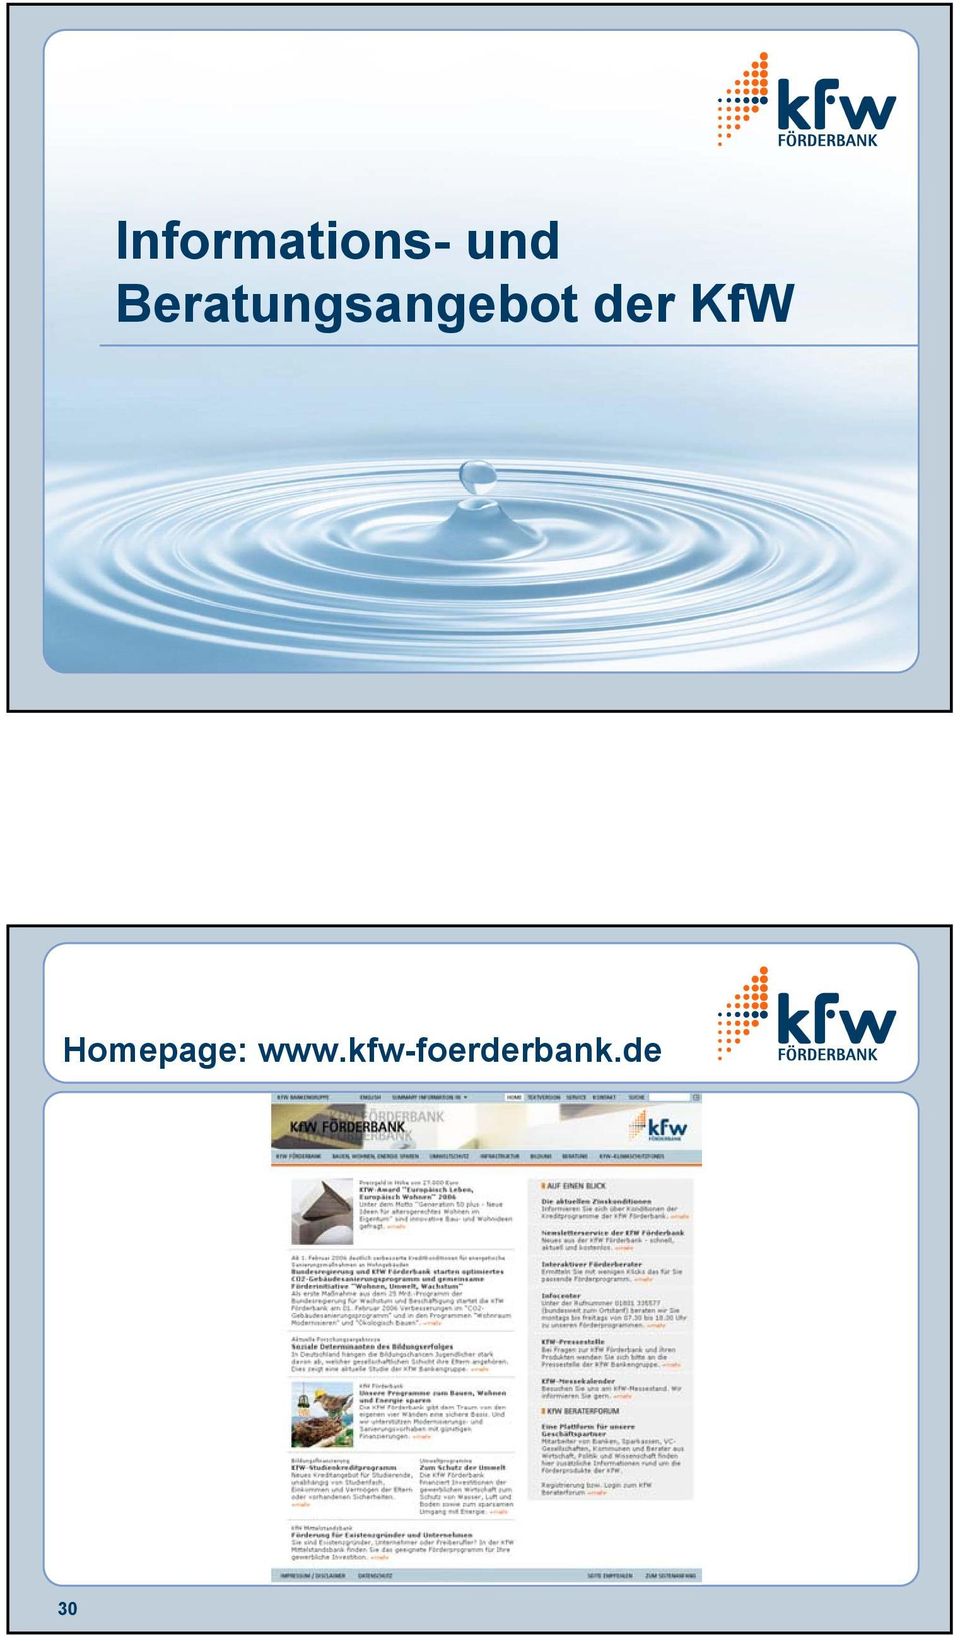 der KfW Homepage: